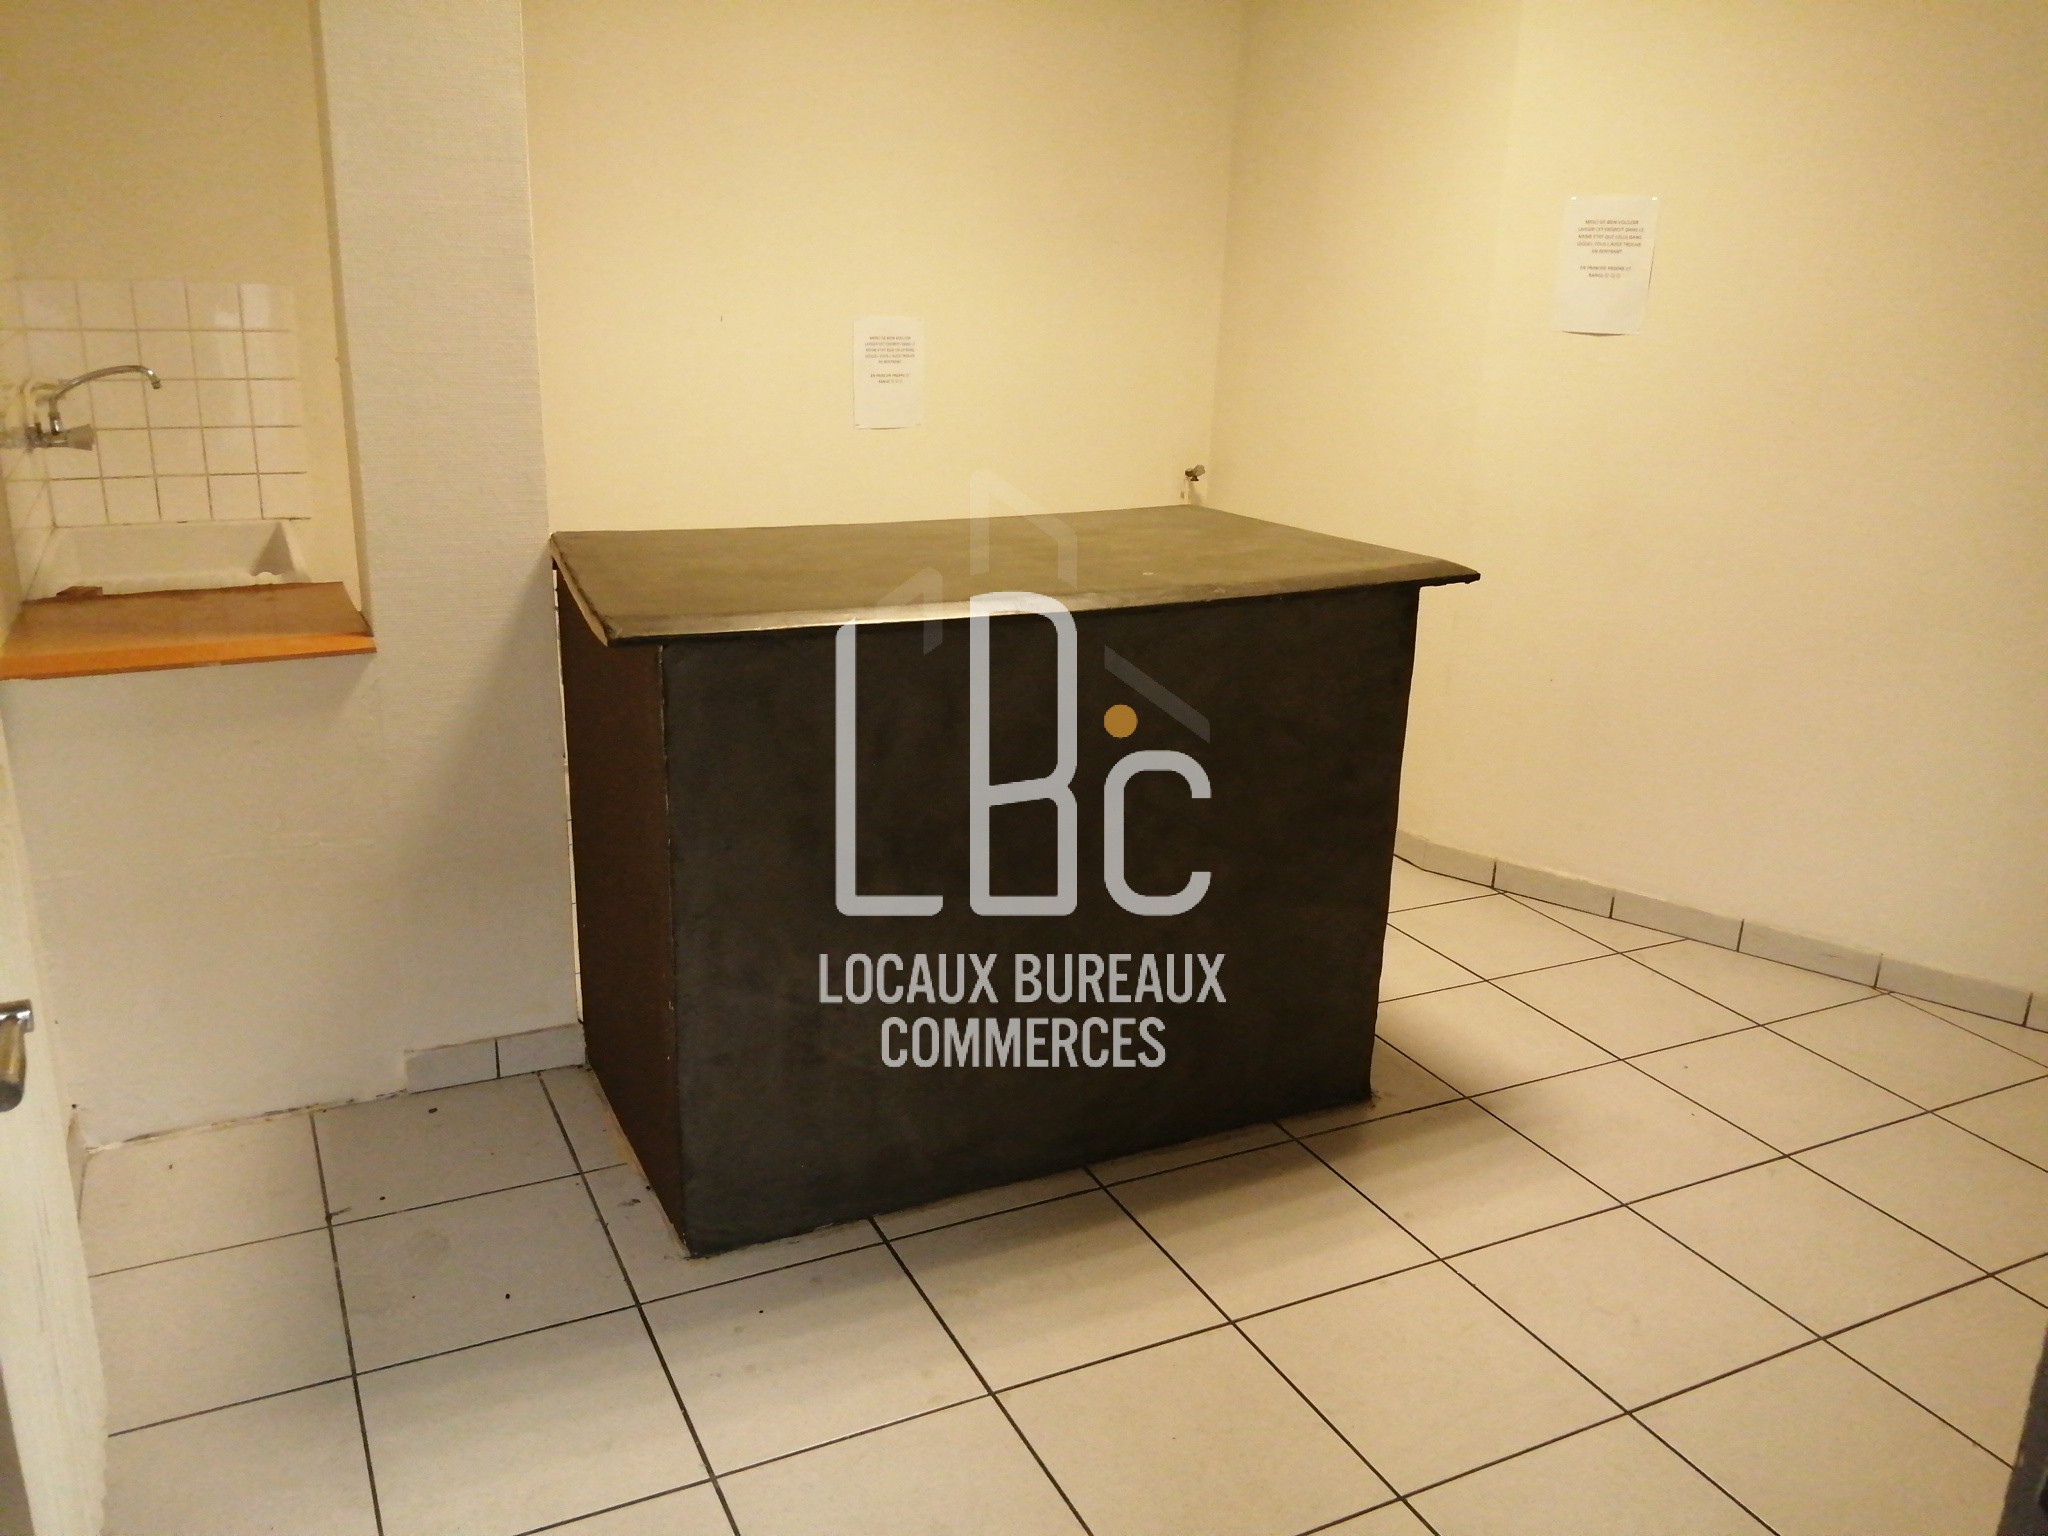 Location Bureau / Commerce à Saint-Herblain 1 pièce